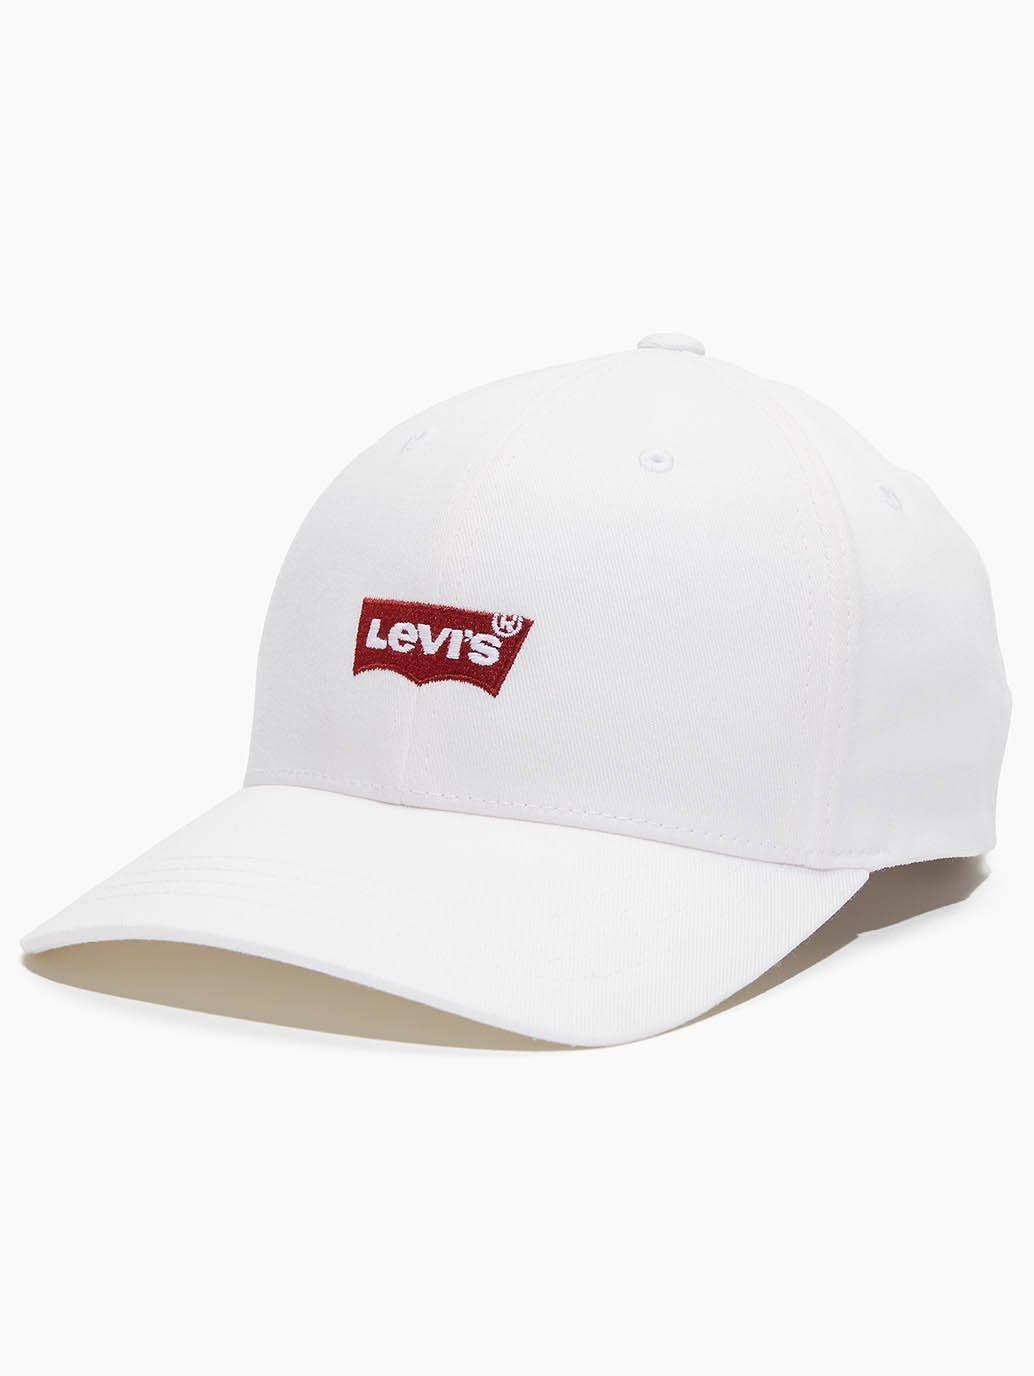 Actualizar 30+ imagen levi’s hats